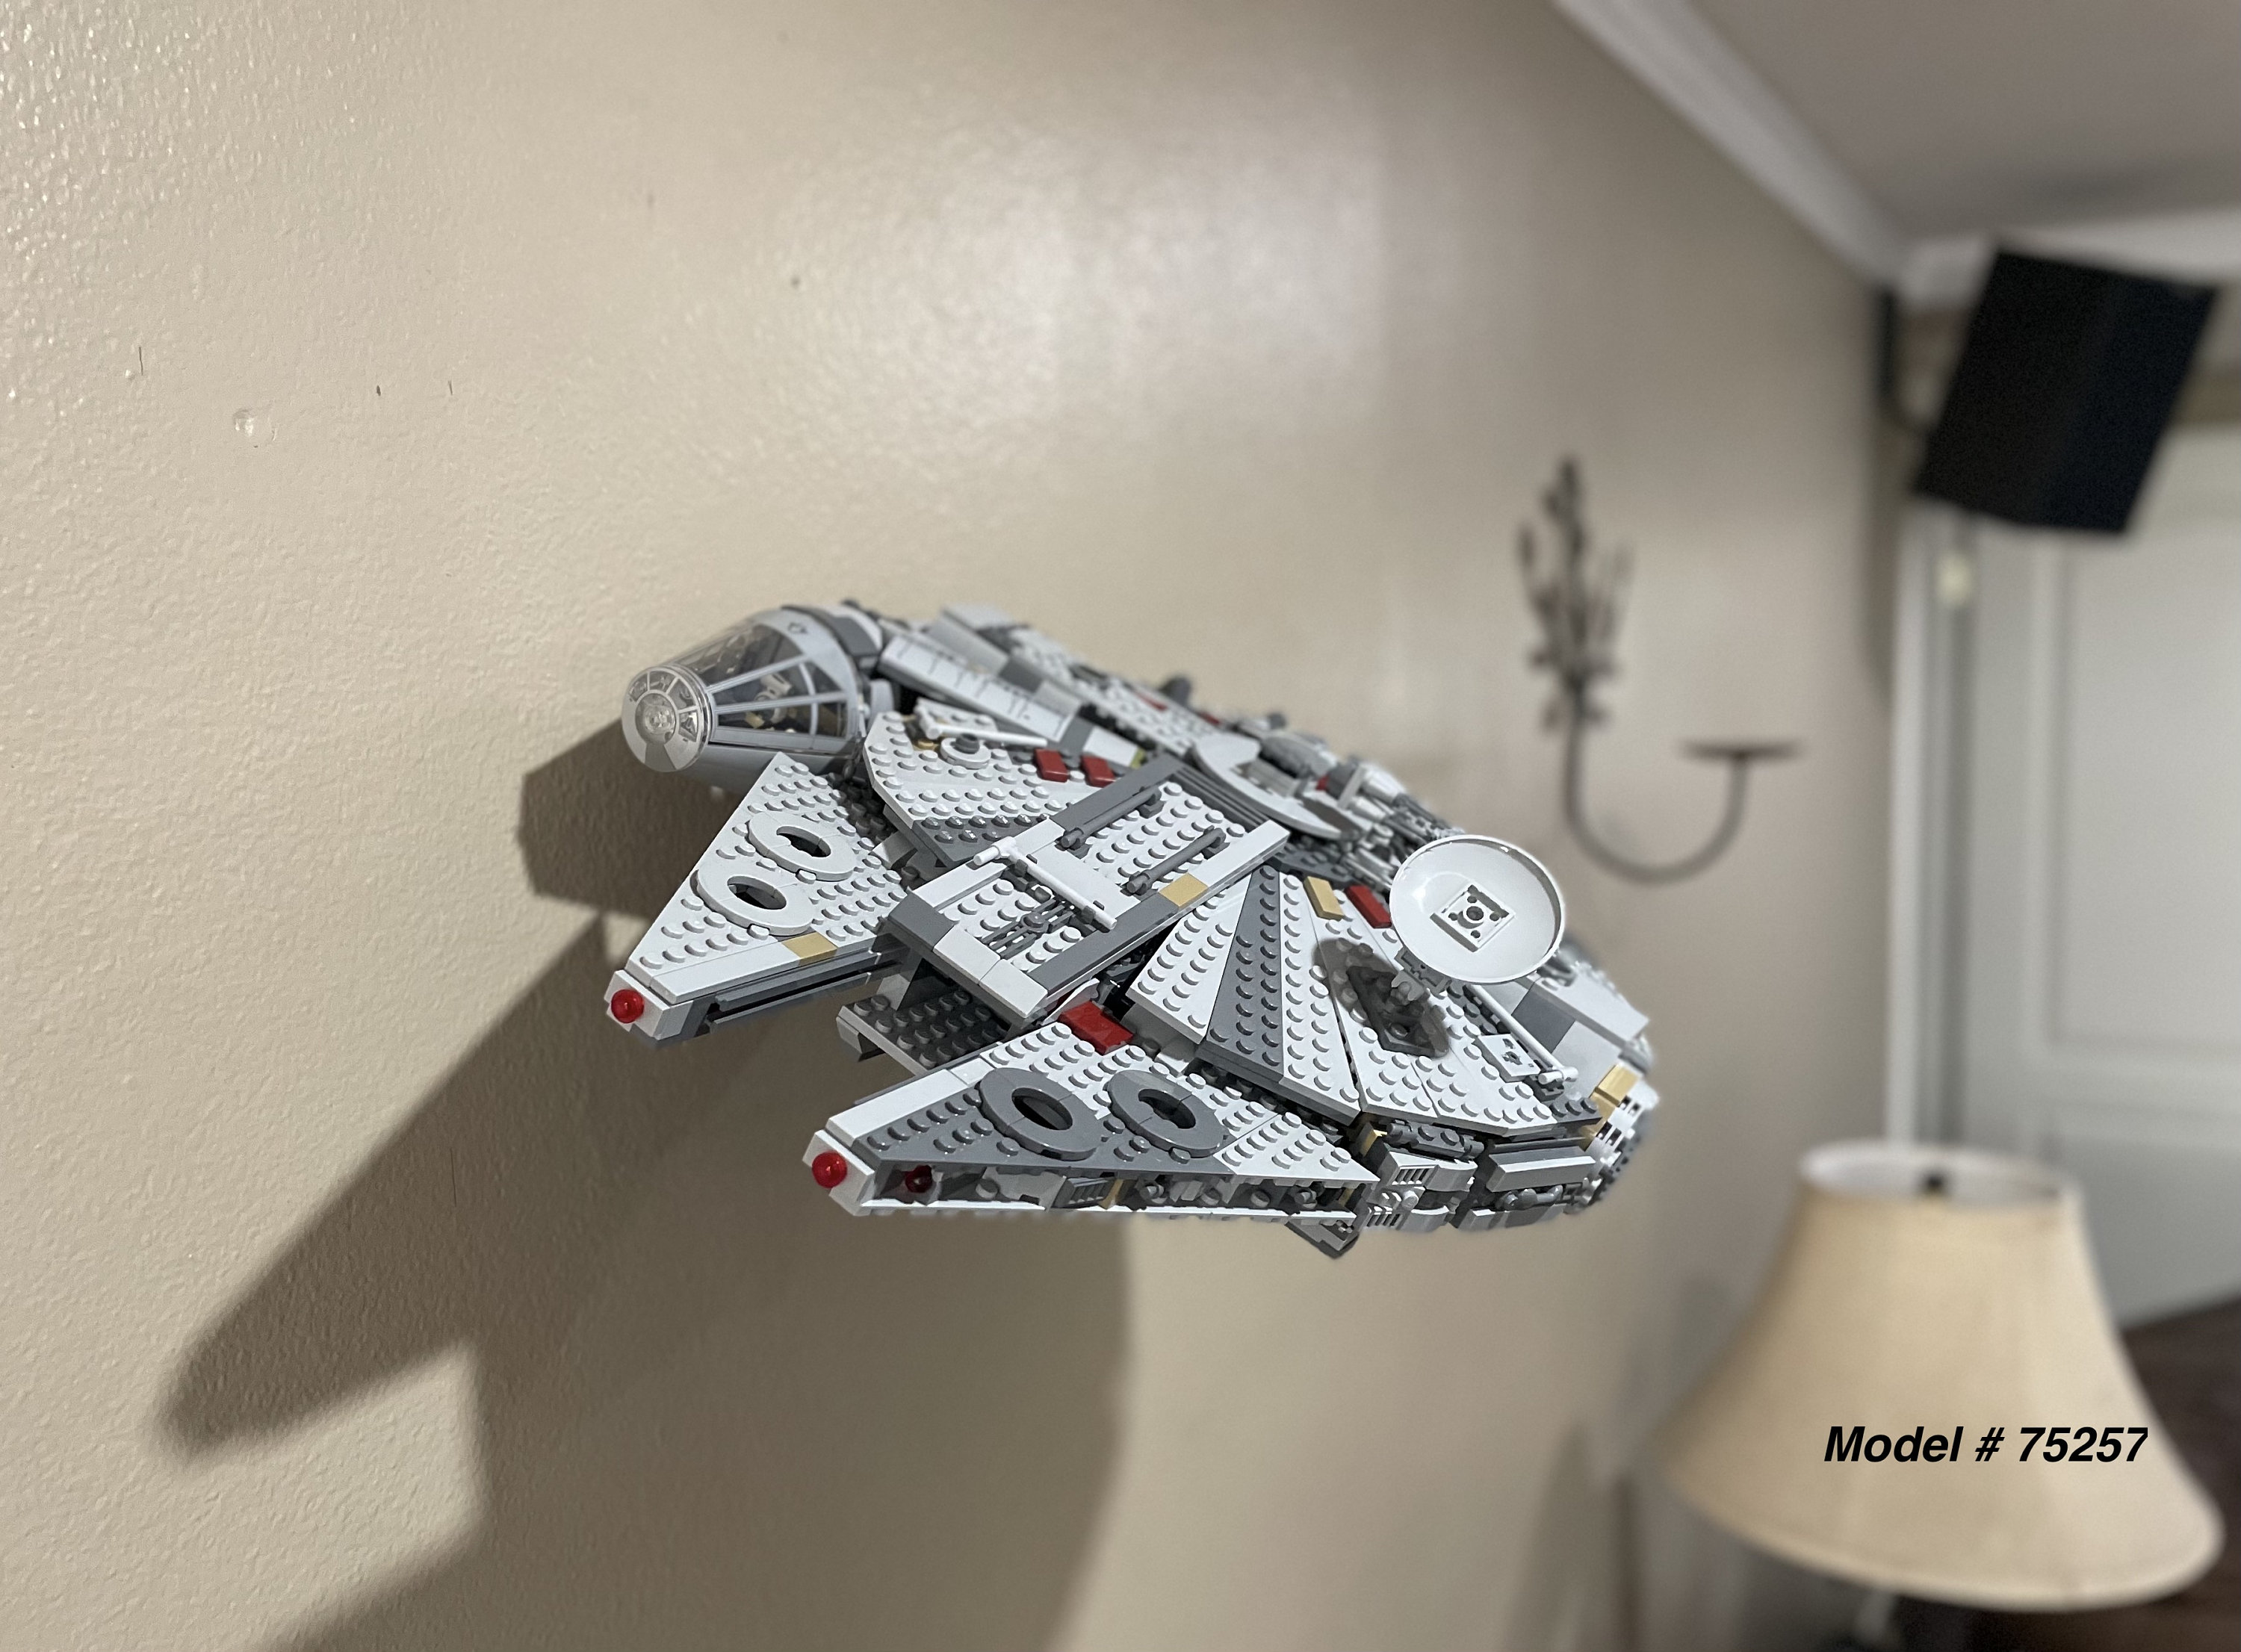 LEGO Star Wars UCS Millennium Falcon tombe au prix le plus bas